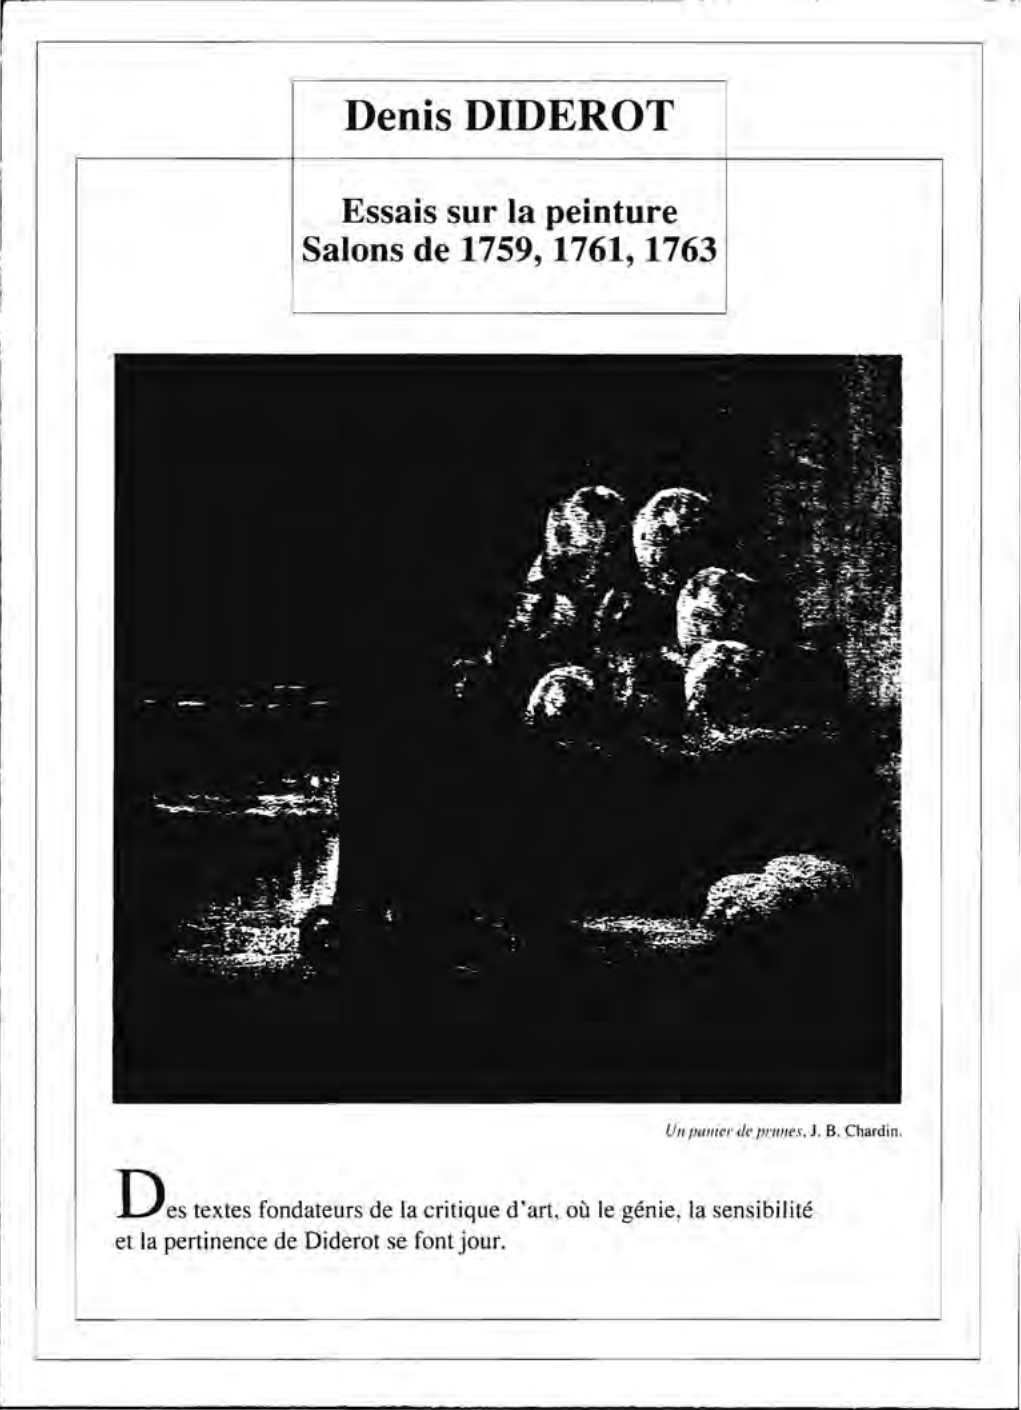 Prévisualisation du document Salons de 1763, 1765, 1767 de Diderot  (résumé & analyse)